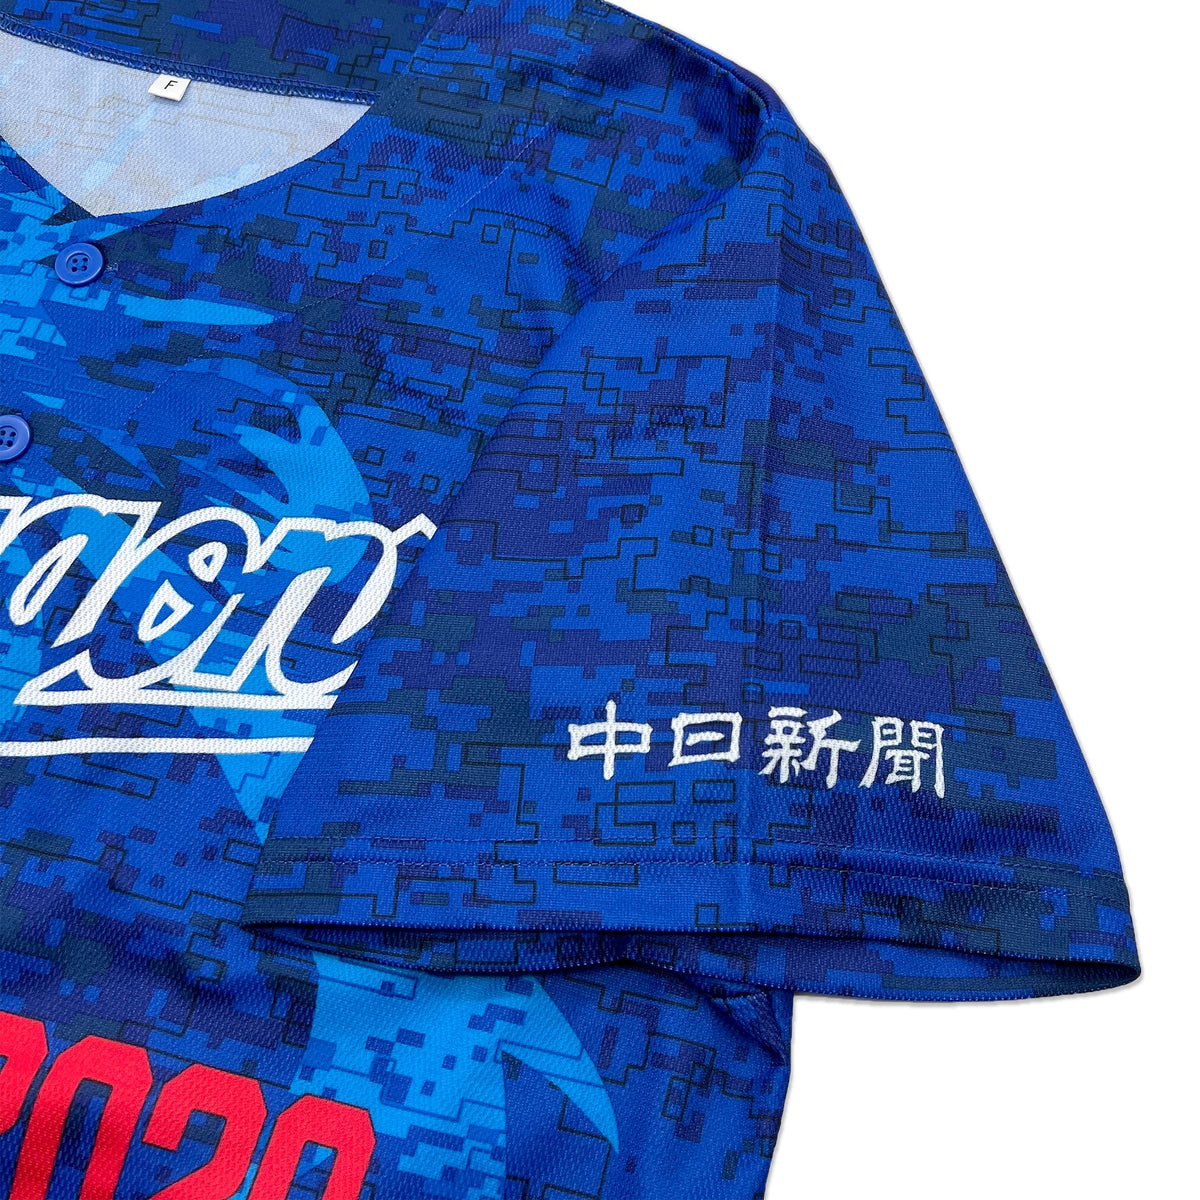 Limited Japan NPB Baseball Chunichi Dragons Promotional Jersey Blue 2020 - Sugoi JDM